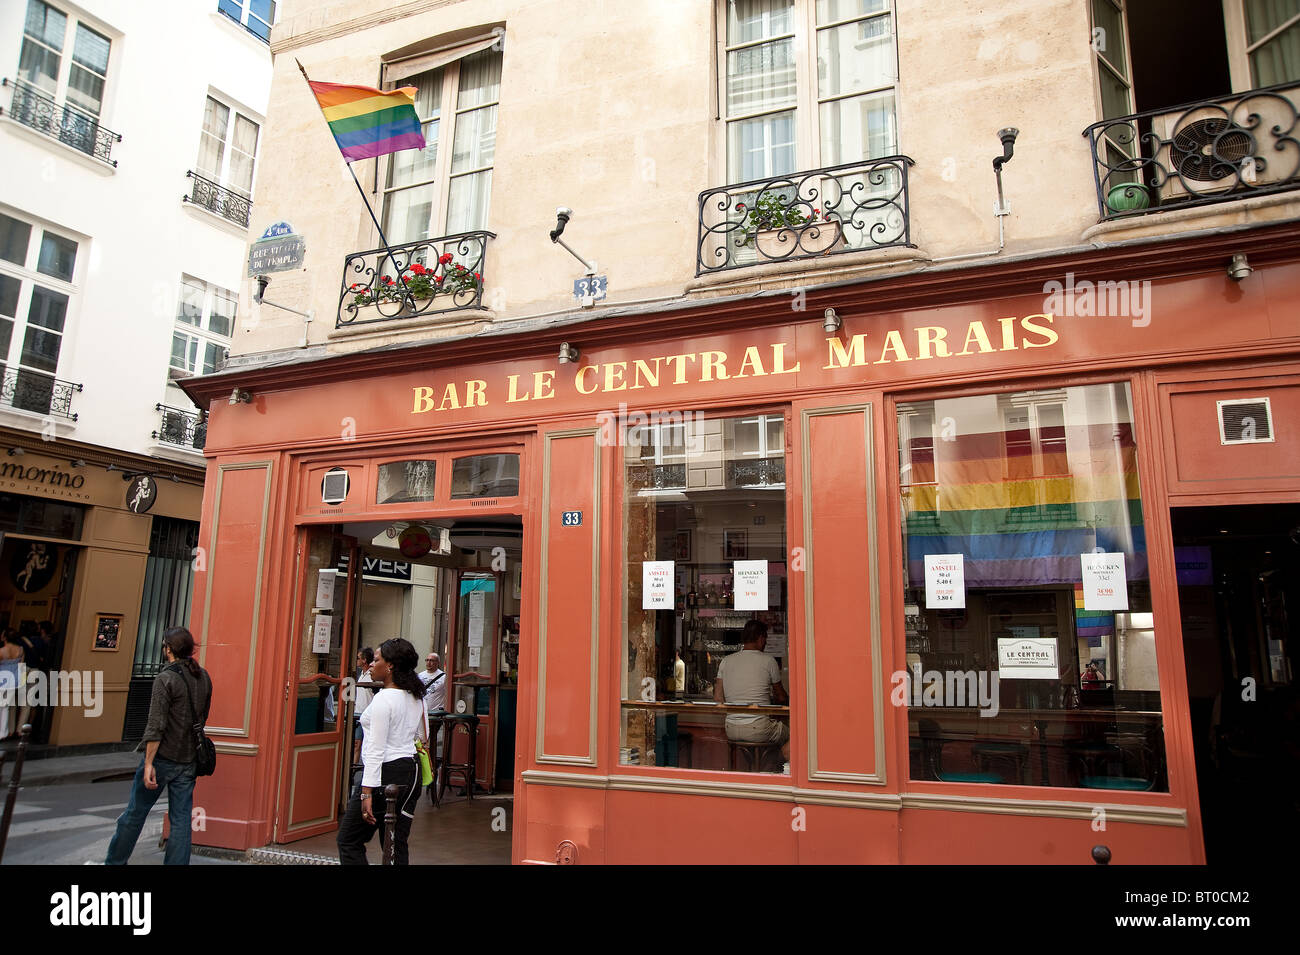 Bar Le Central in the Marais District, Paris, France Stock Photo - Alamy